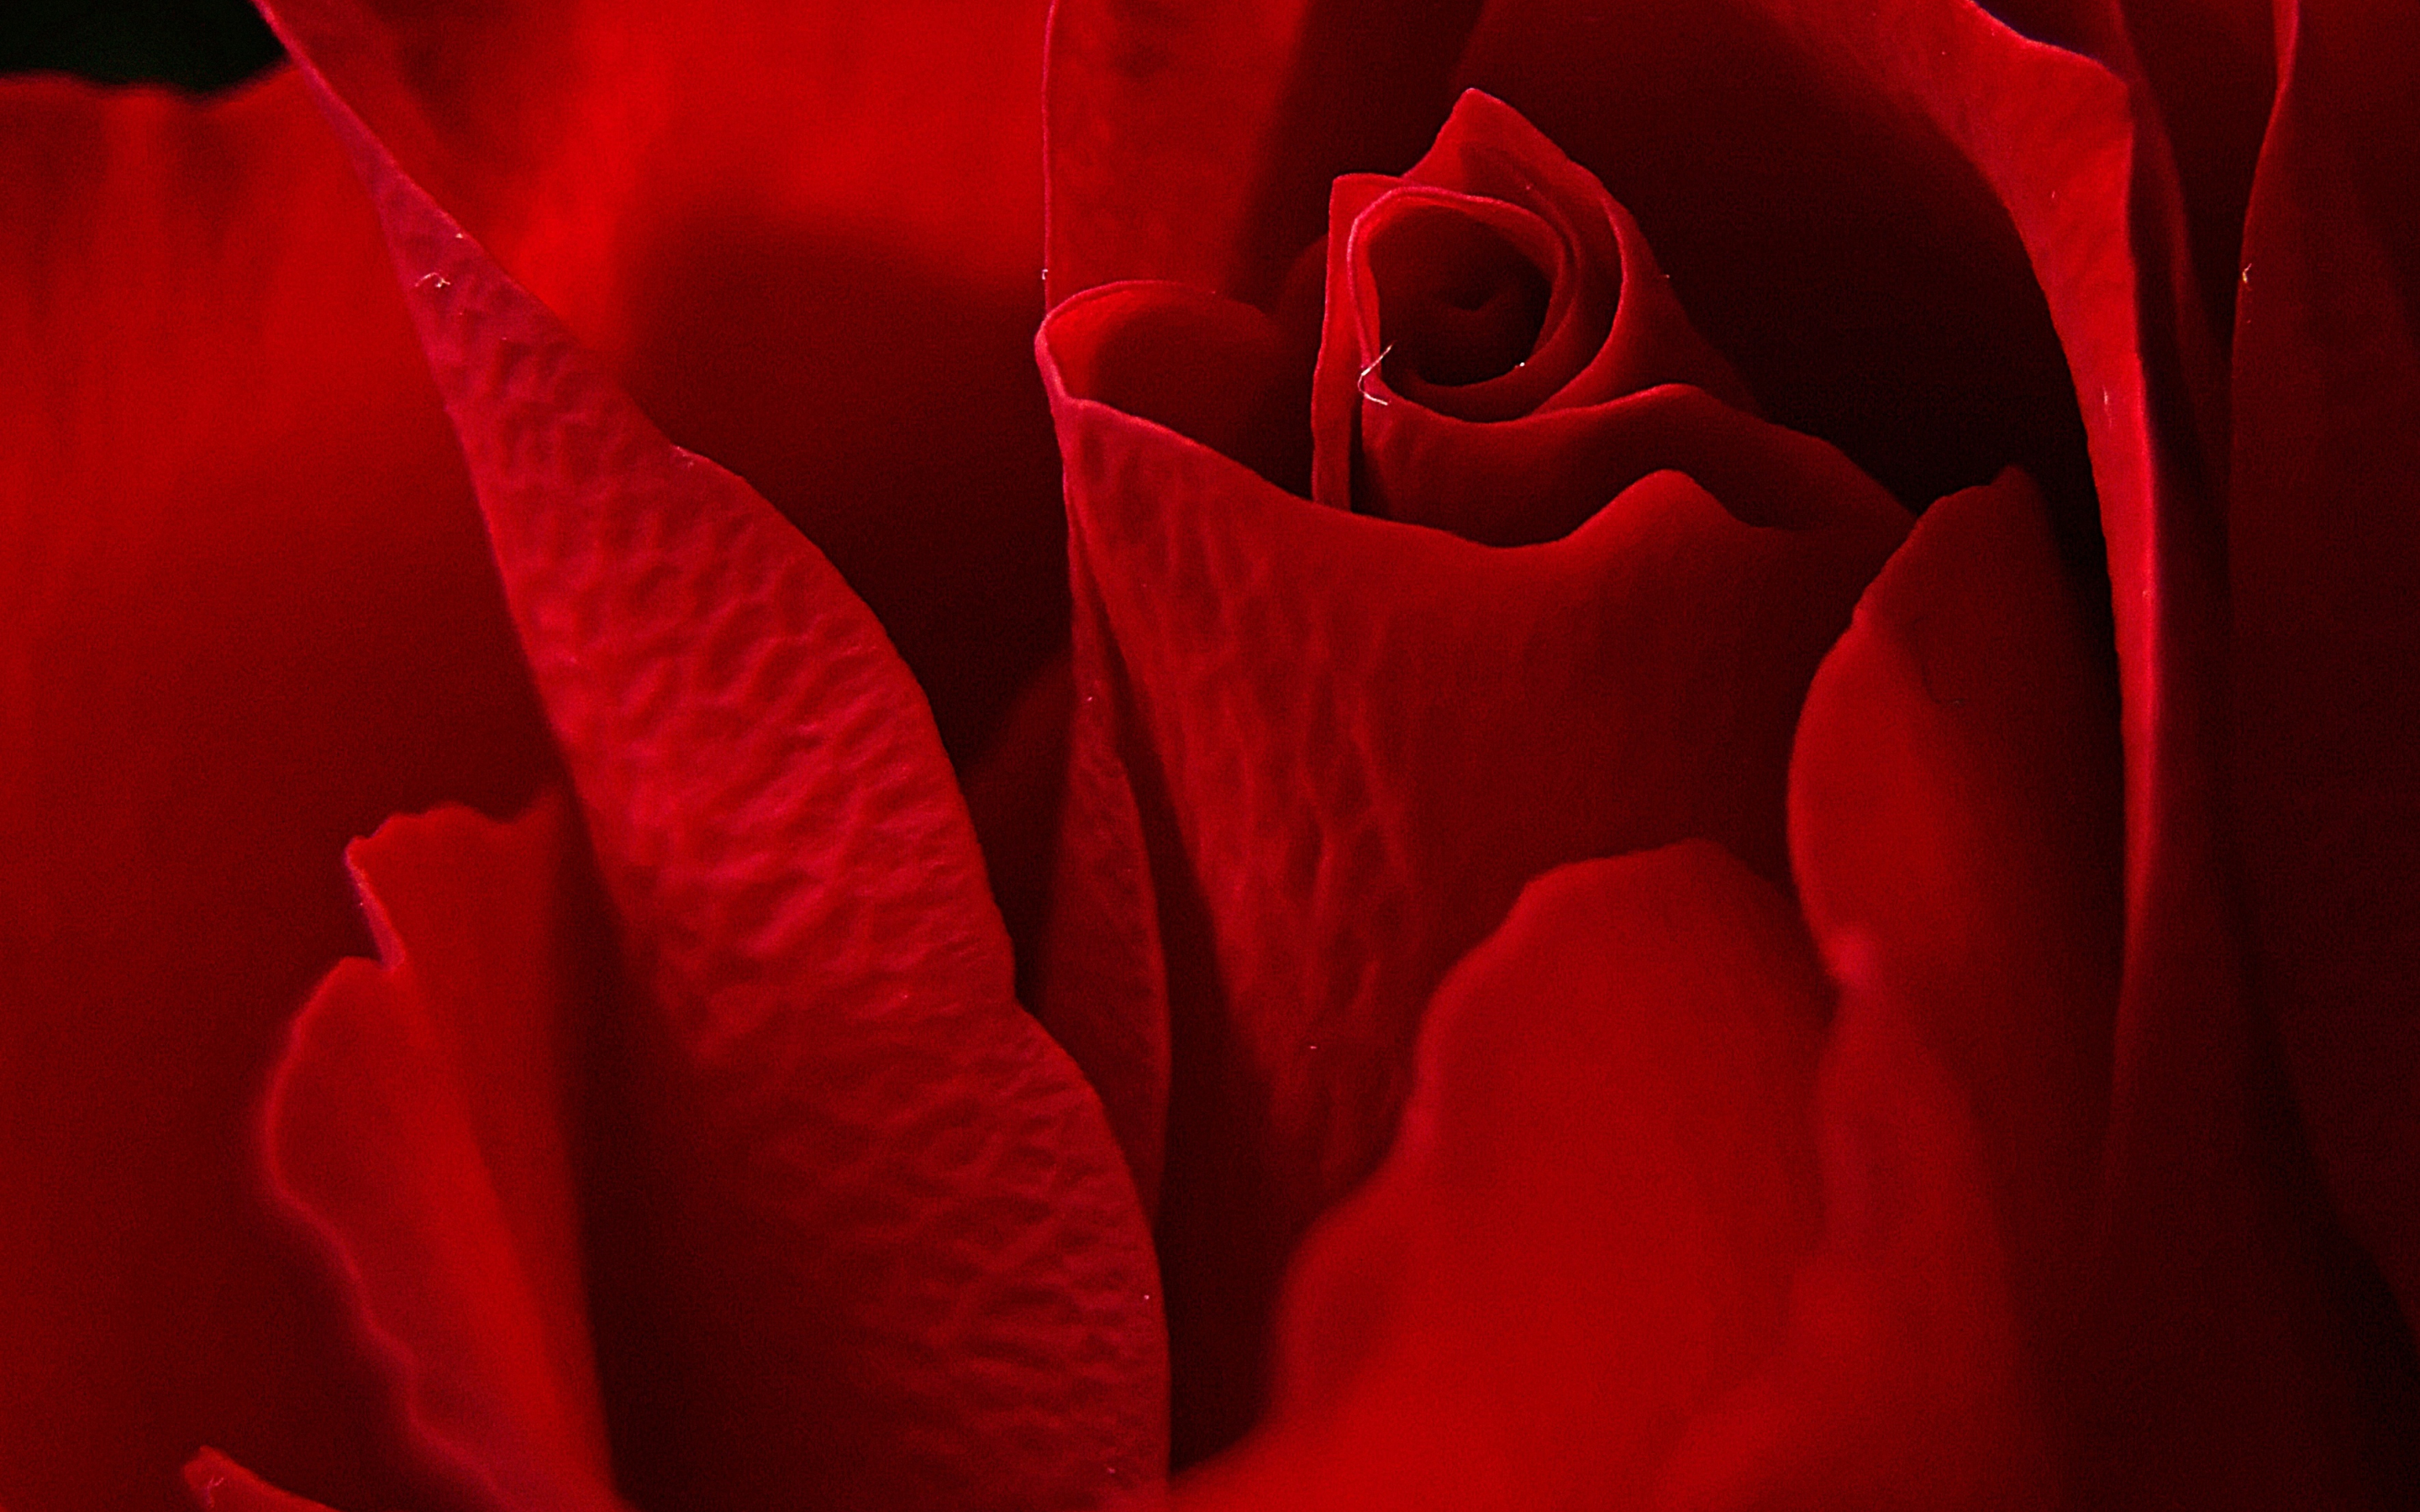 Petals, rose, close up, red, 2880x1800 wallpaper